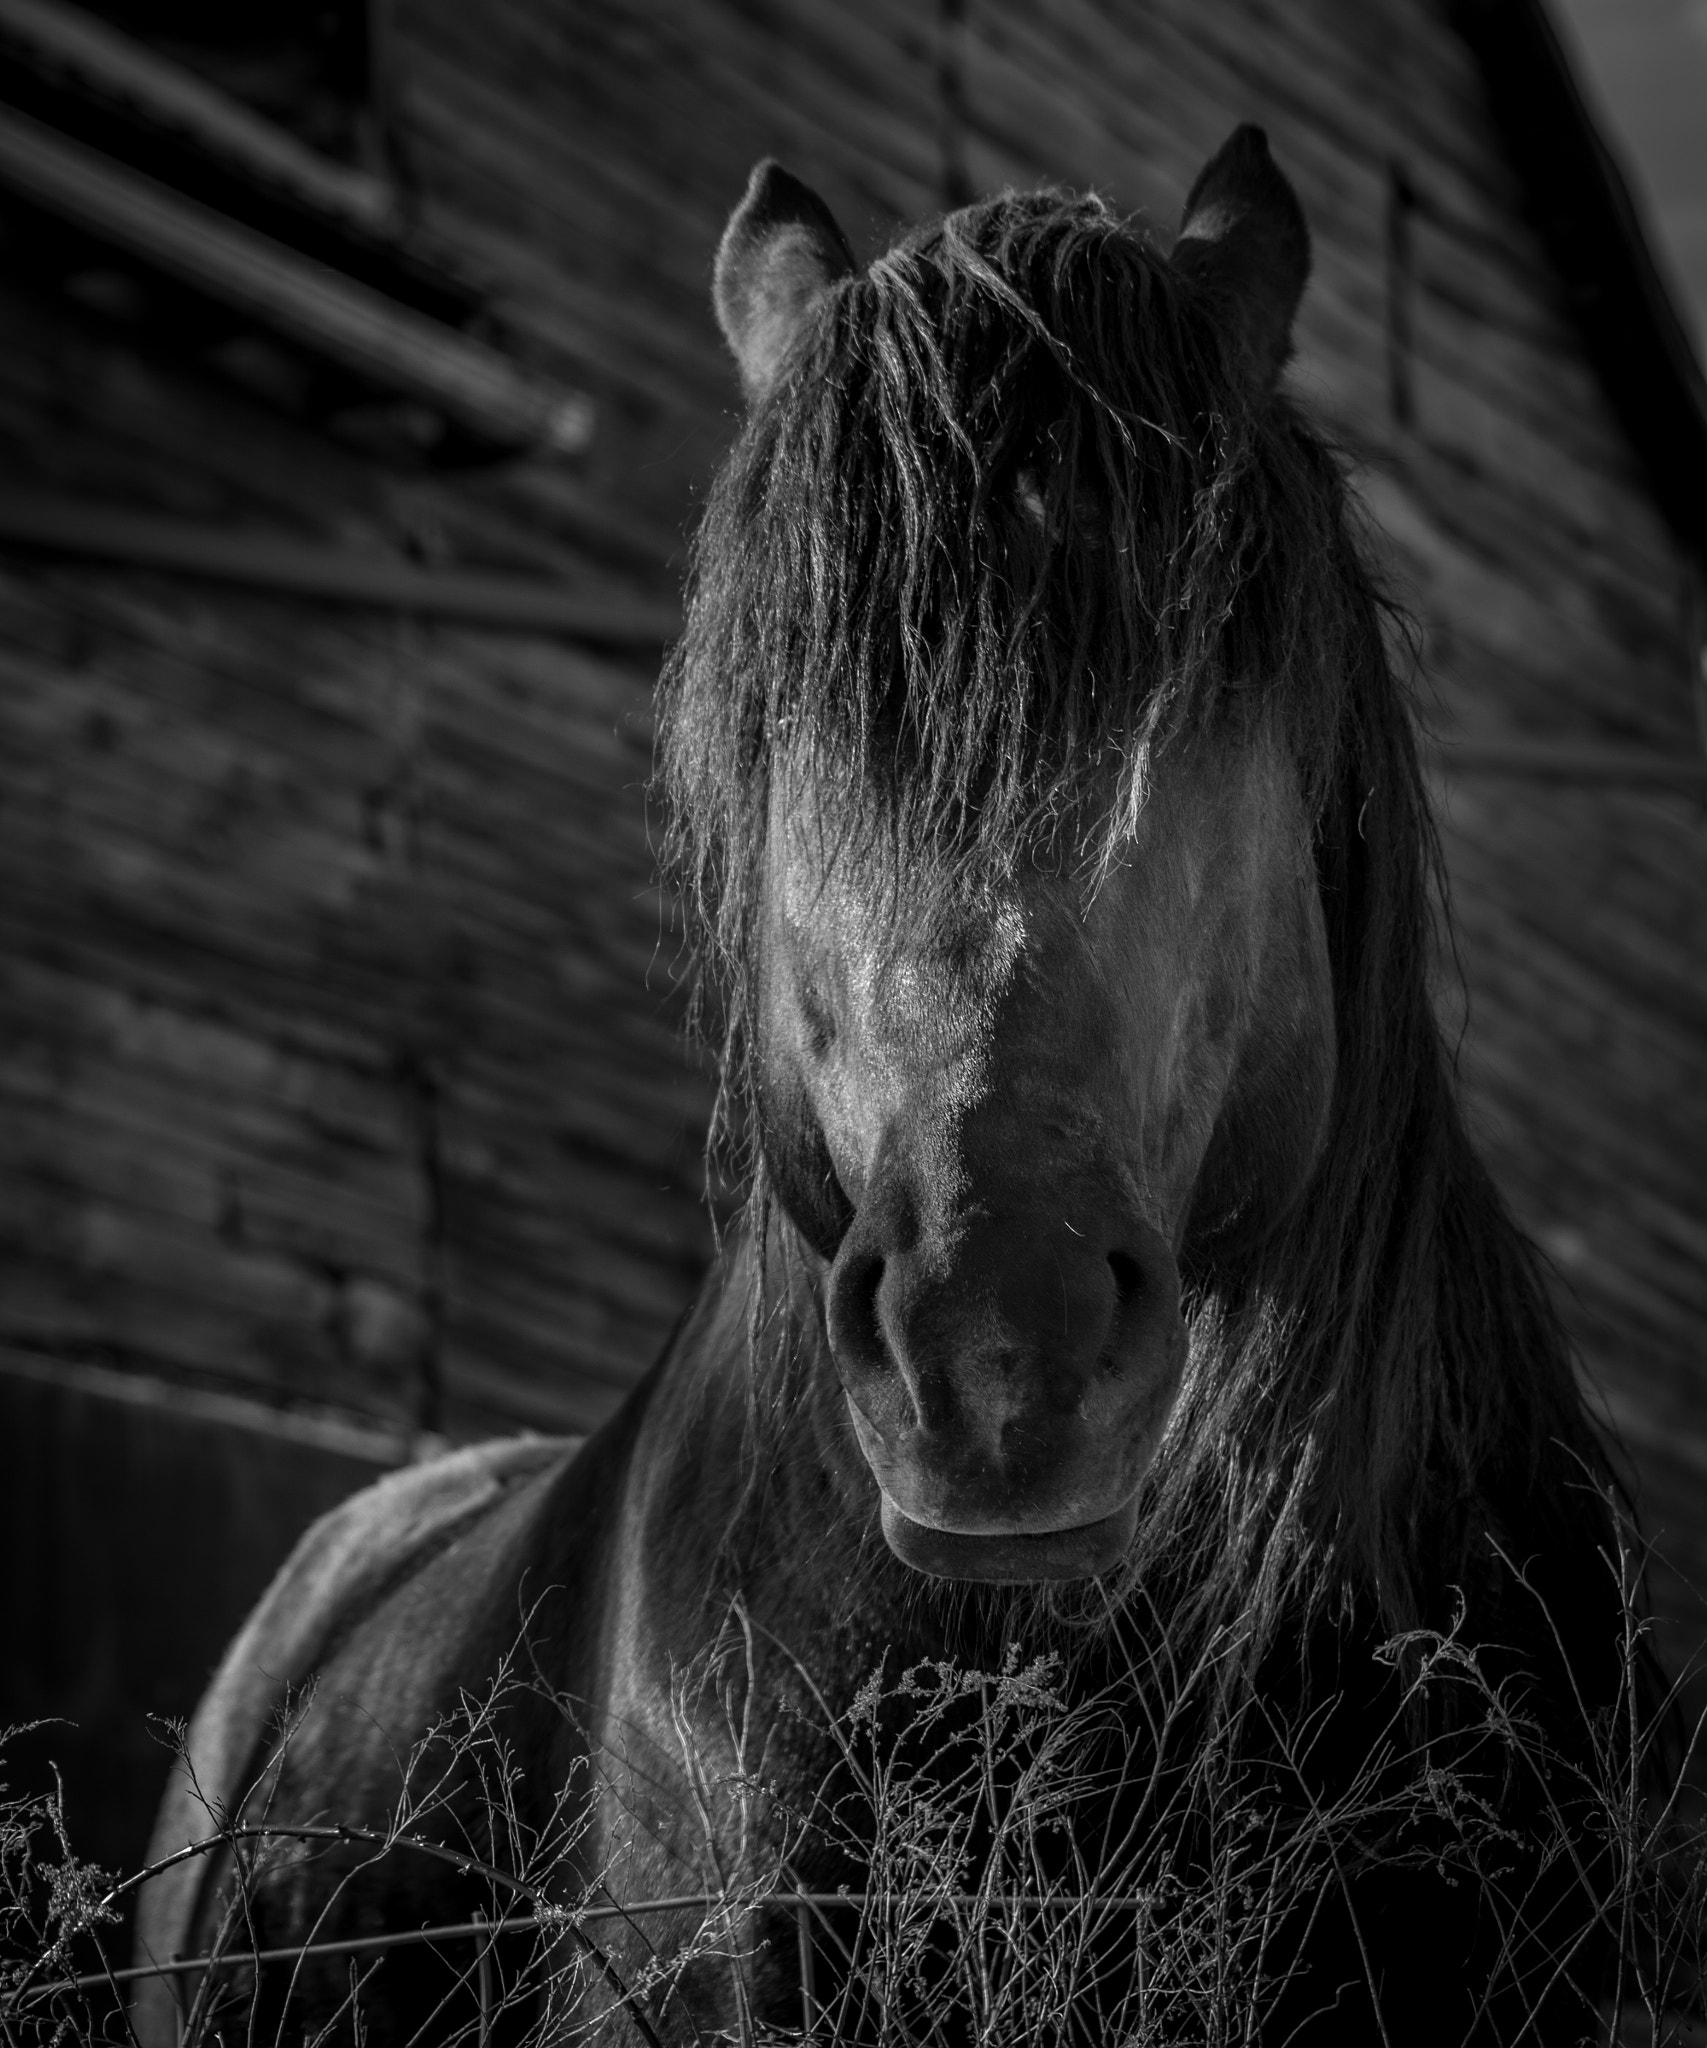 AF Nikkor 70-210mm f/4-5.6 sample photo. Handsome horse photography